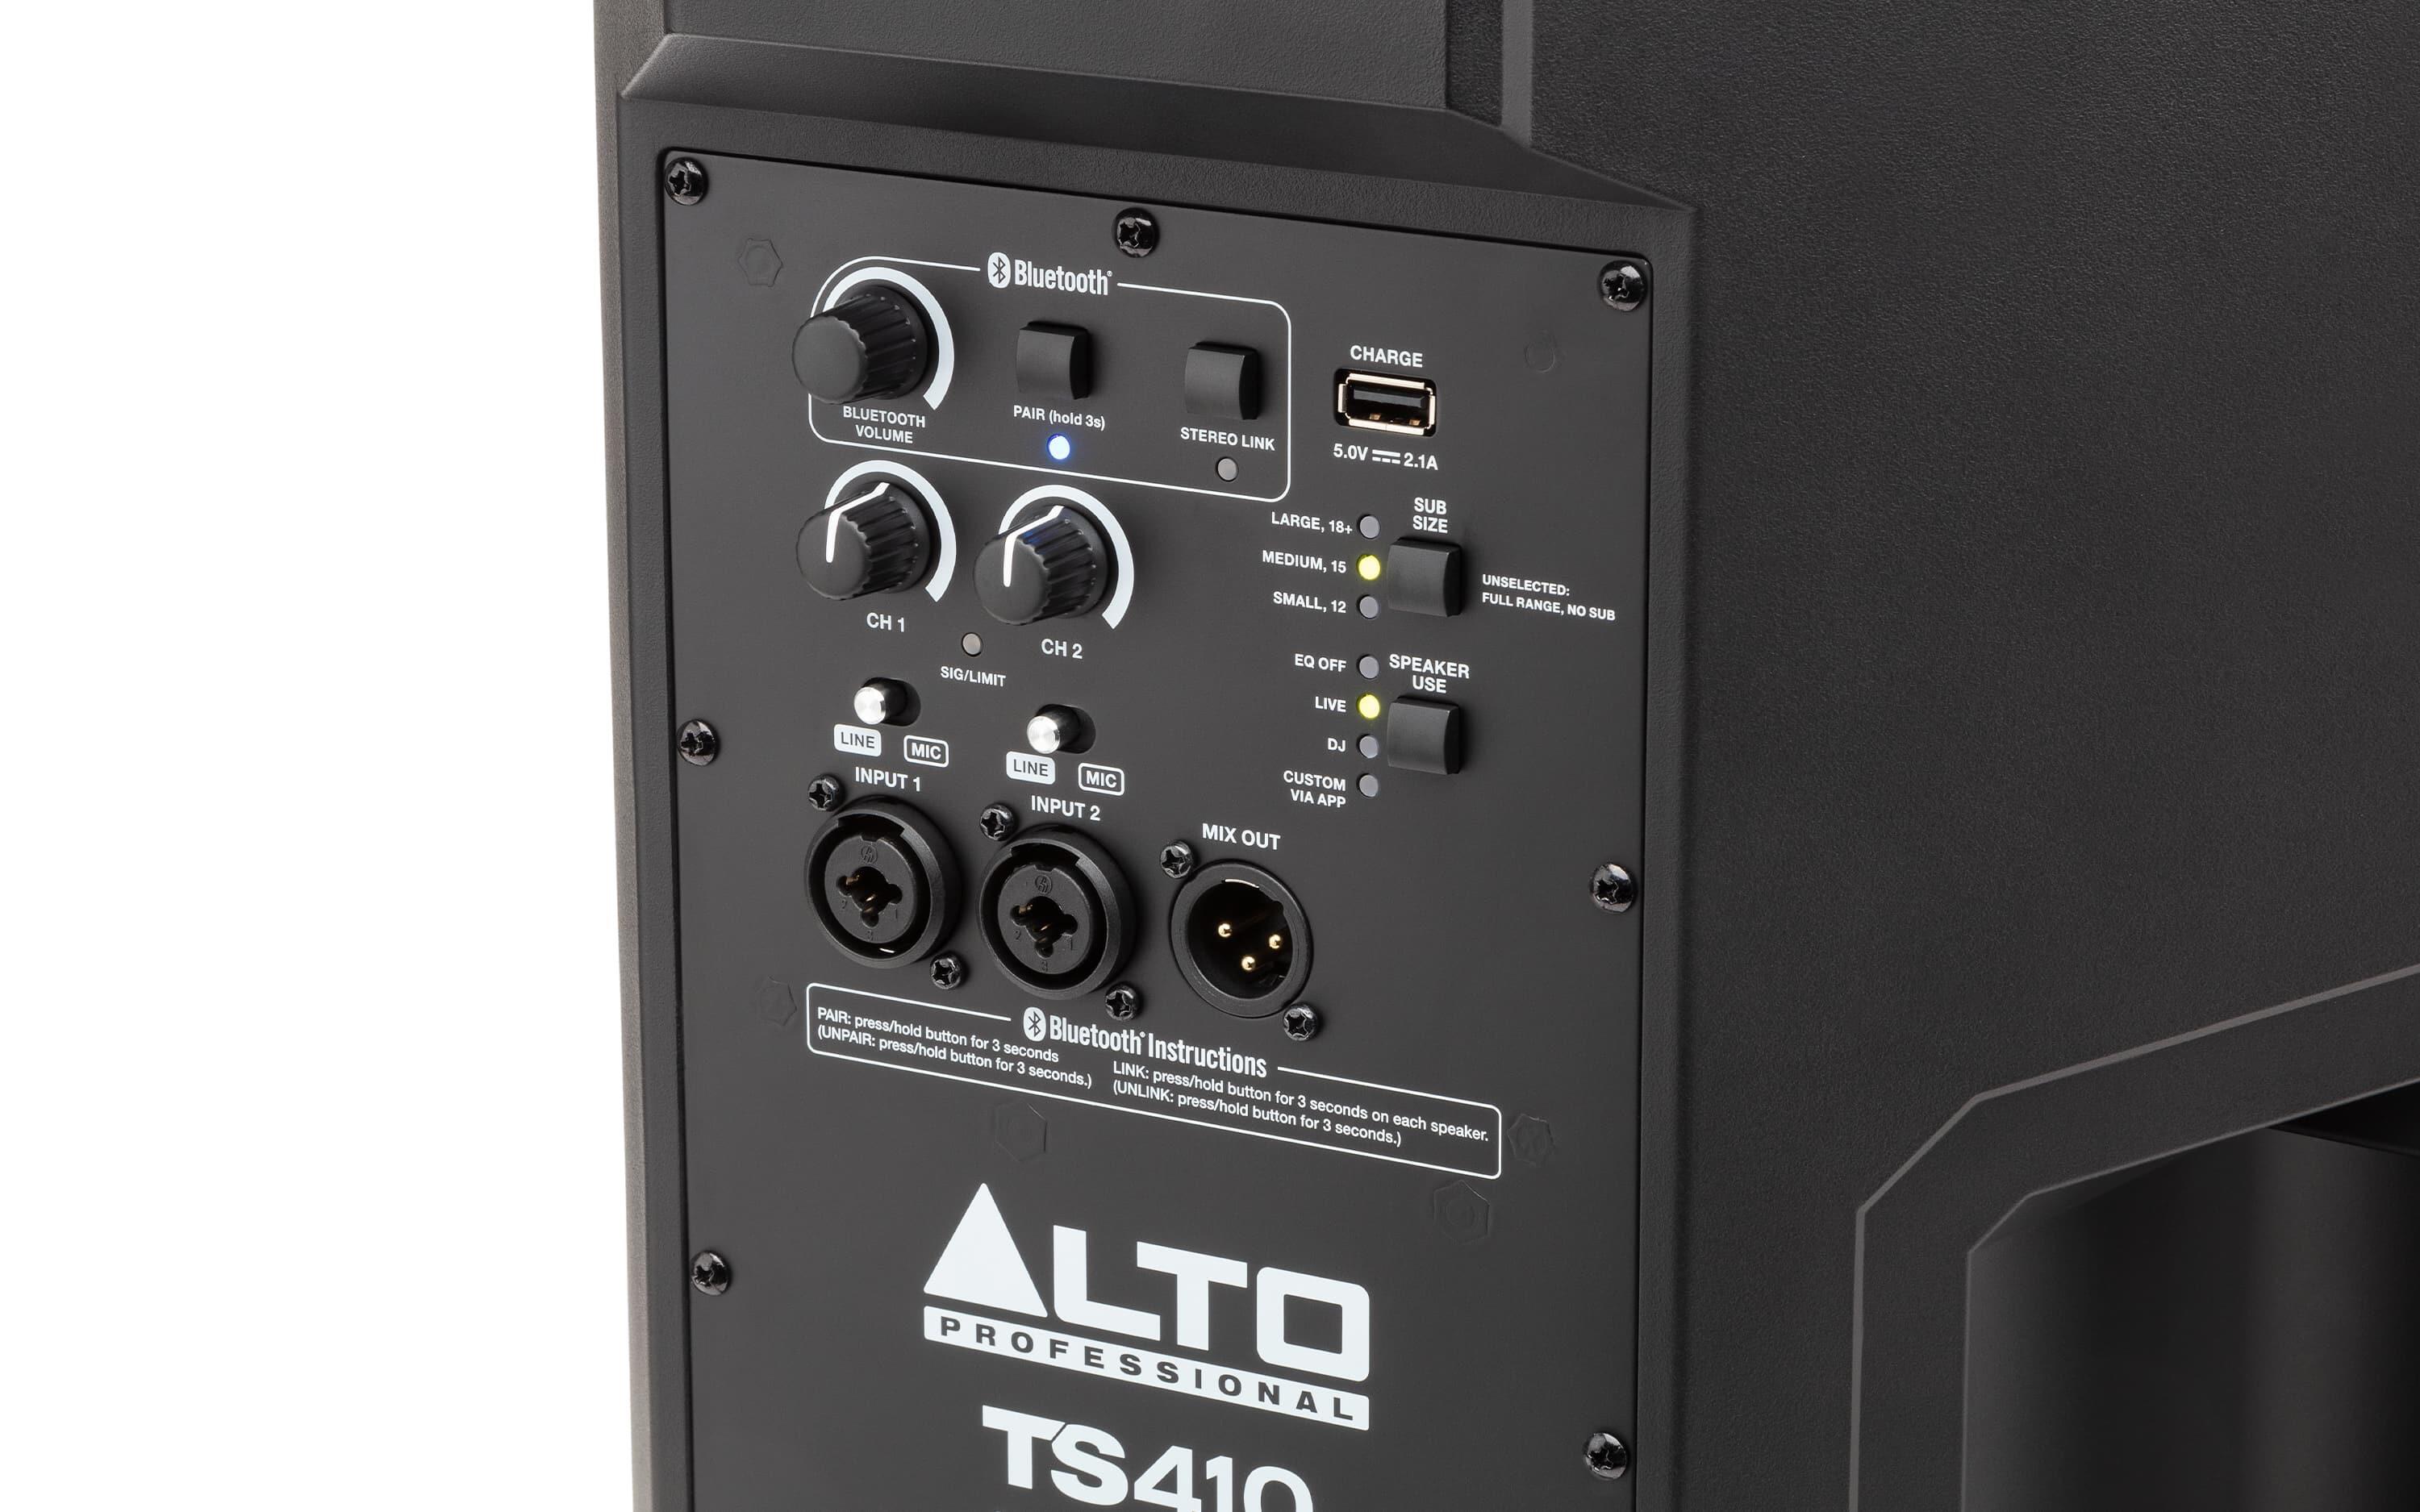 Alto Professional TS410 inputs